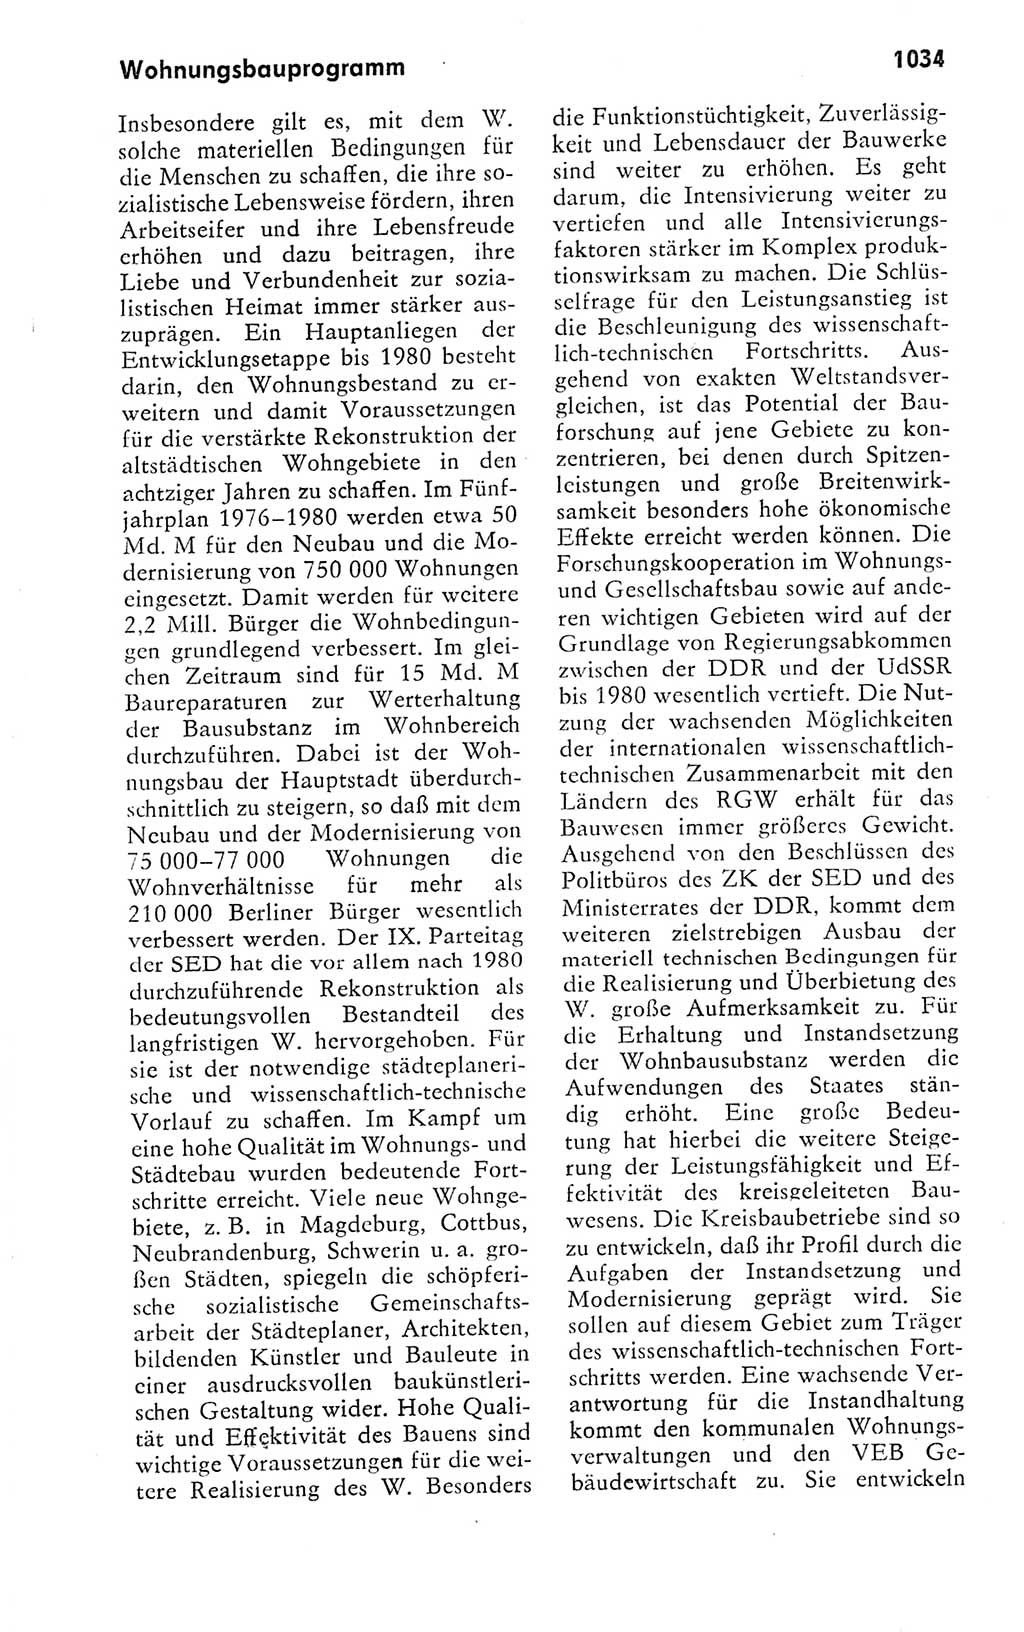 Kleines politisches Wörterbuch [Deutsche Demokratische Republik (DDR)] 1978, Seite 1034 (Kl. pol. Wb. DDR 1978, S. 1034)